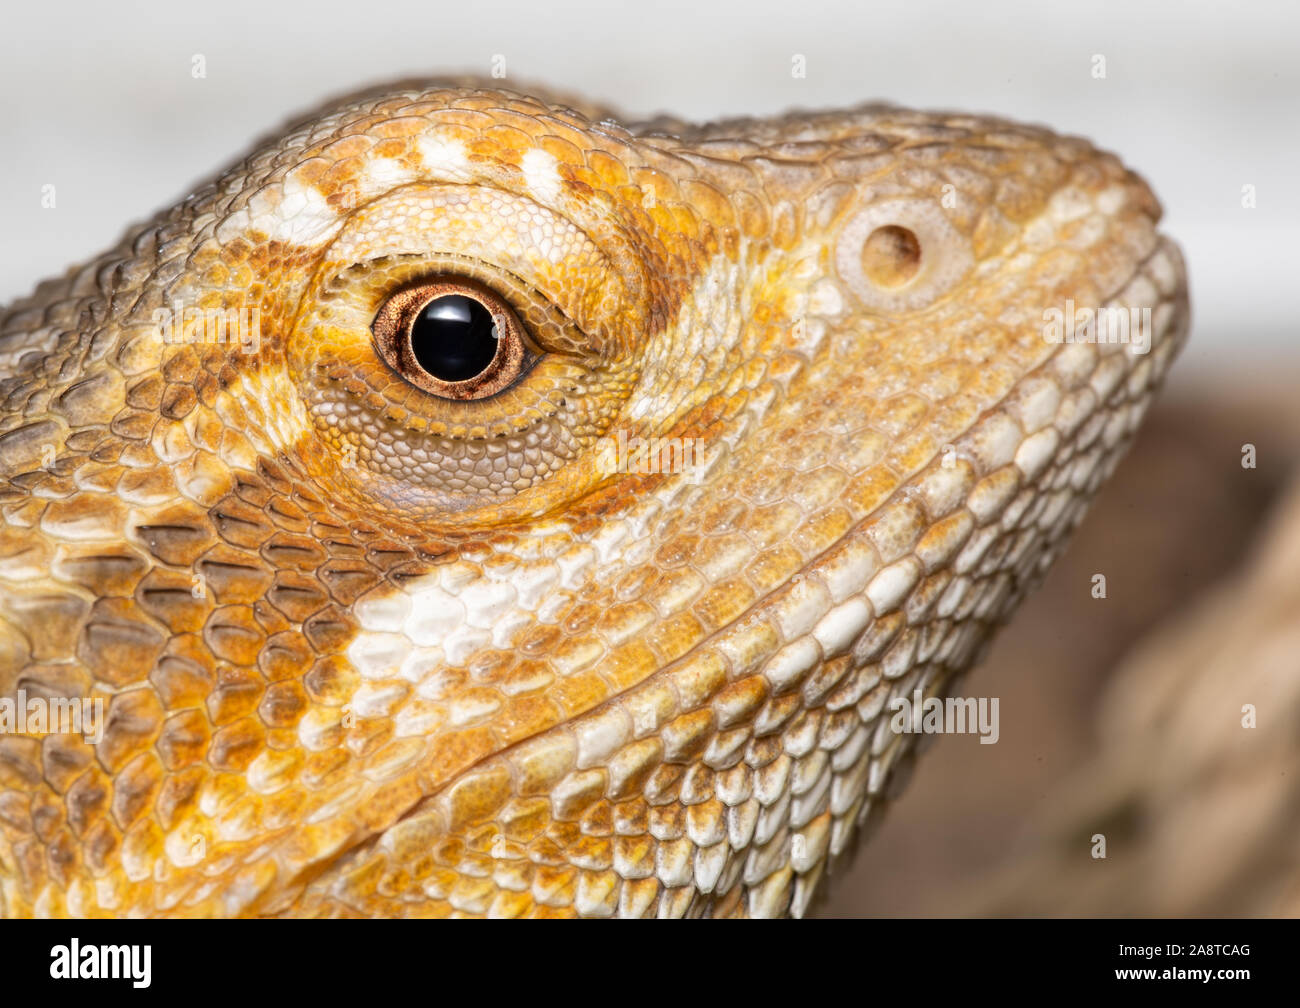 Un dragón biselado pet, con edades en torno a los 6 meses de edad. Foto centrado en la cabeza de este reptil como se ve en la cámara desde una vista lateral Foto de stock